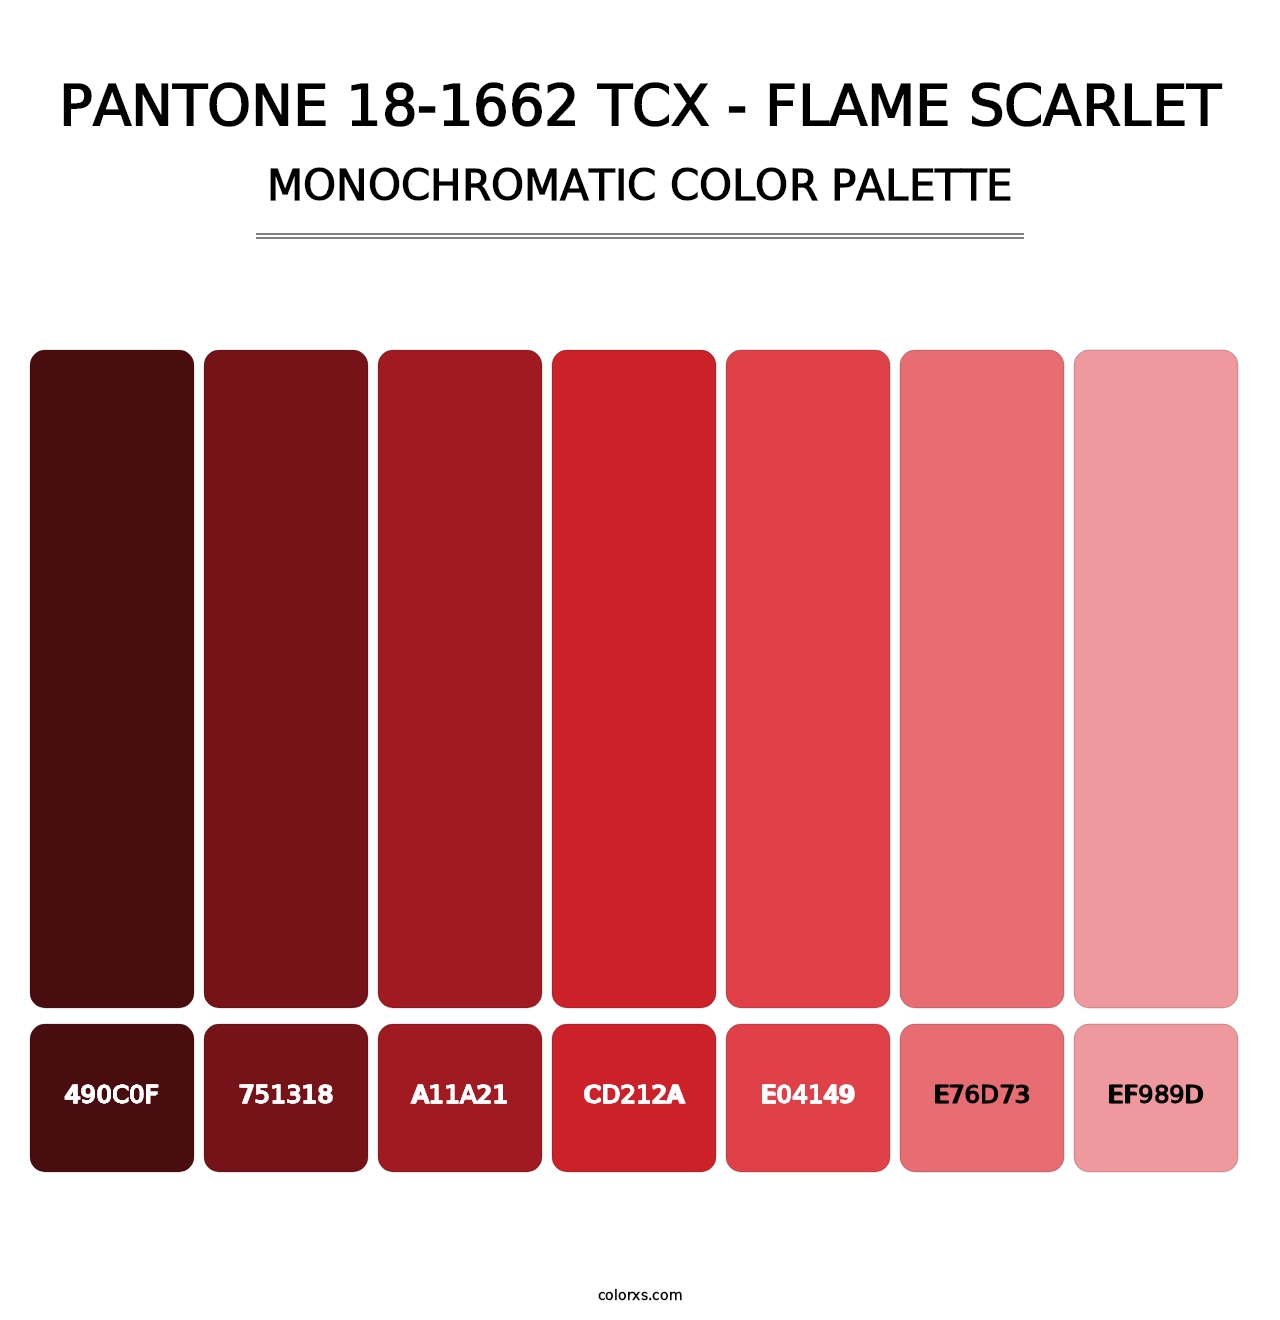 PANTONE 18-1662 TCX - Flame Scarlet - Monochromatic Color Palette